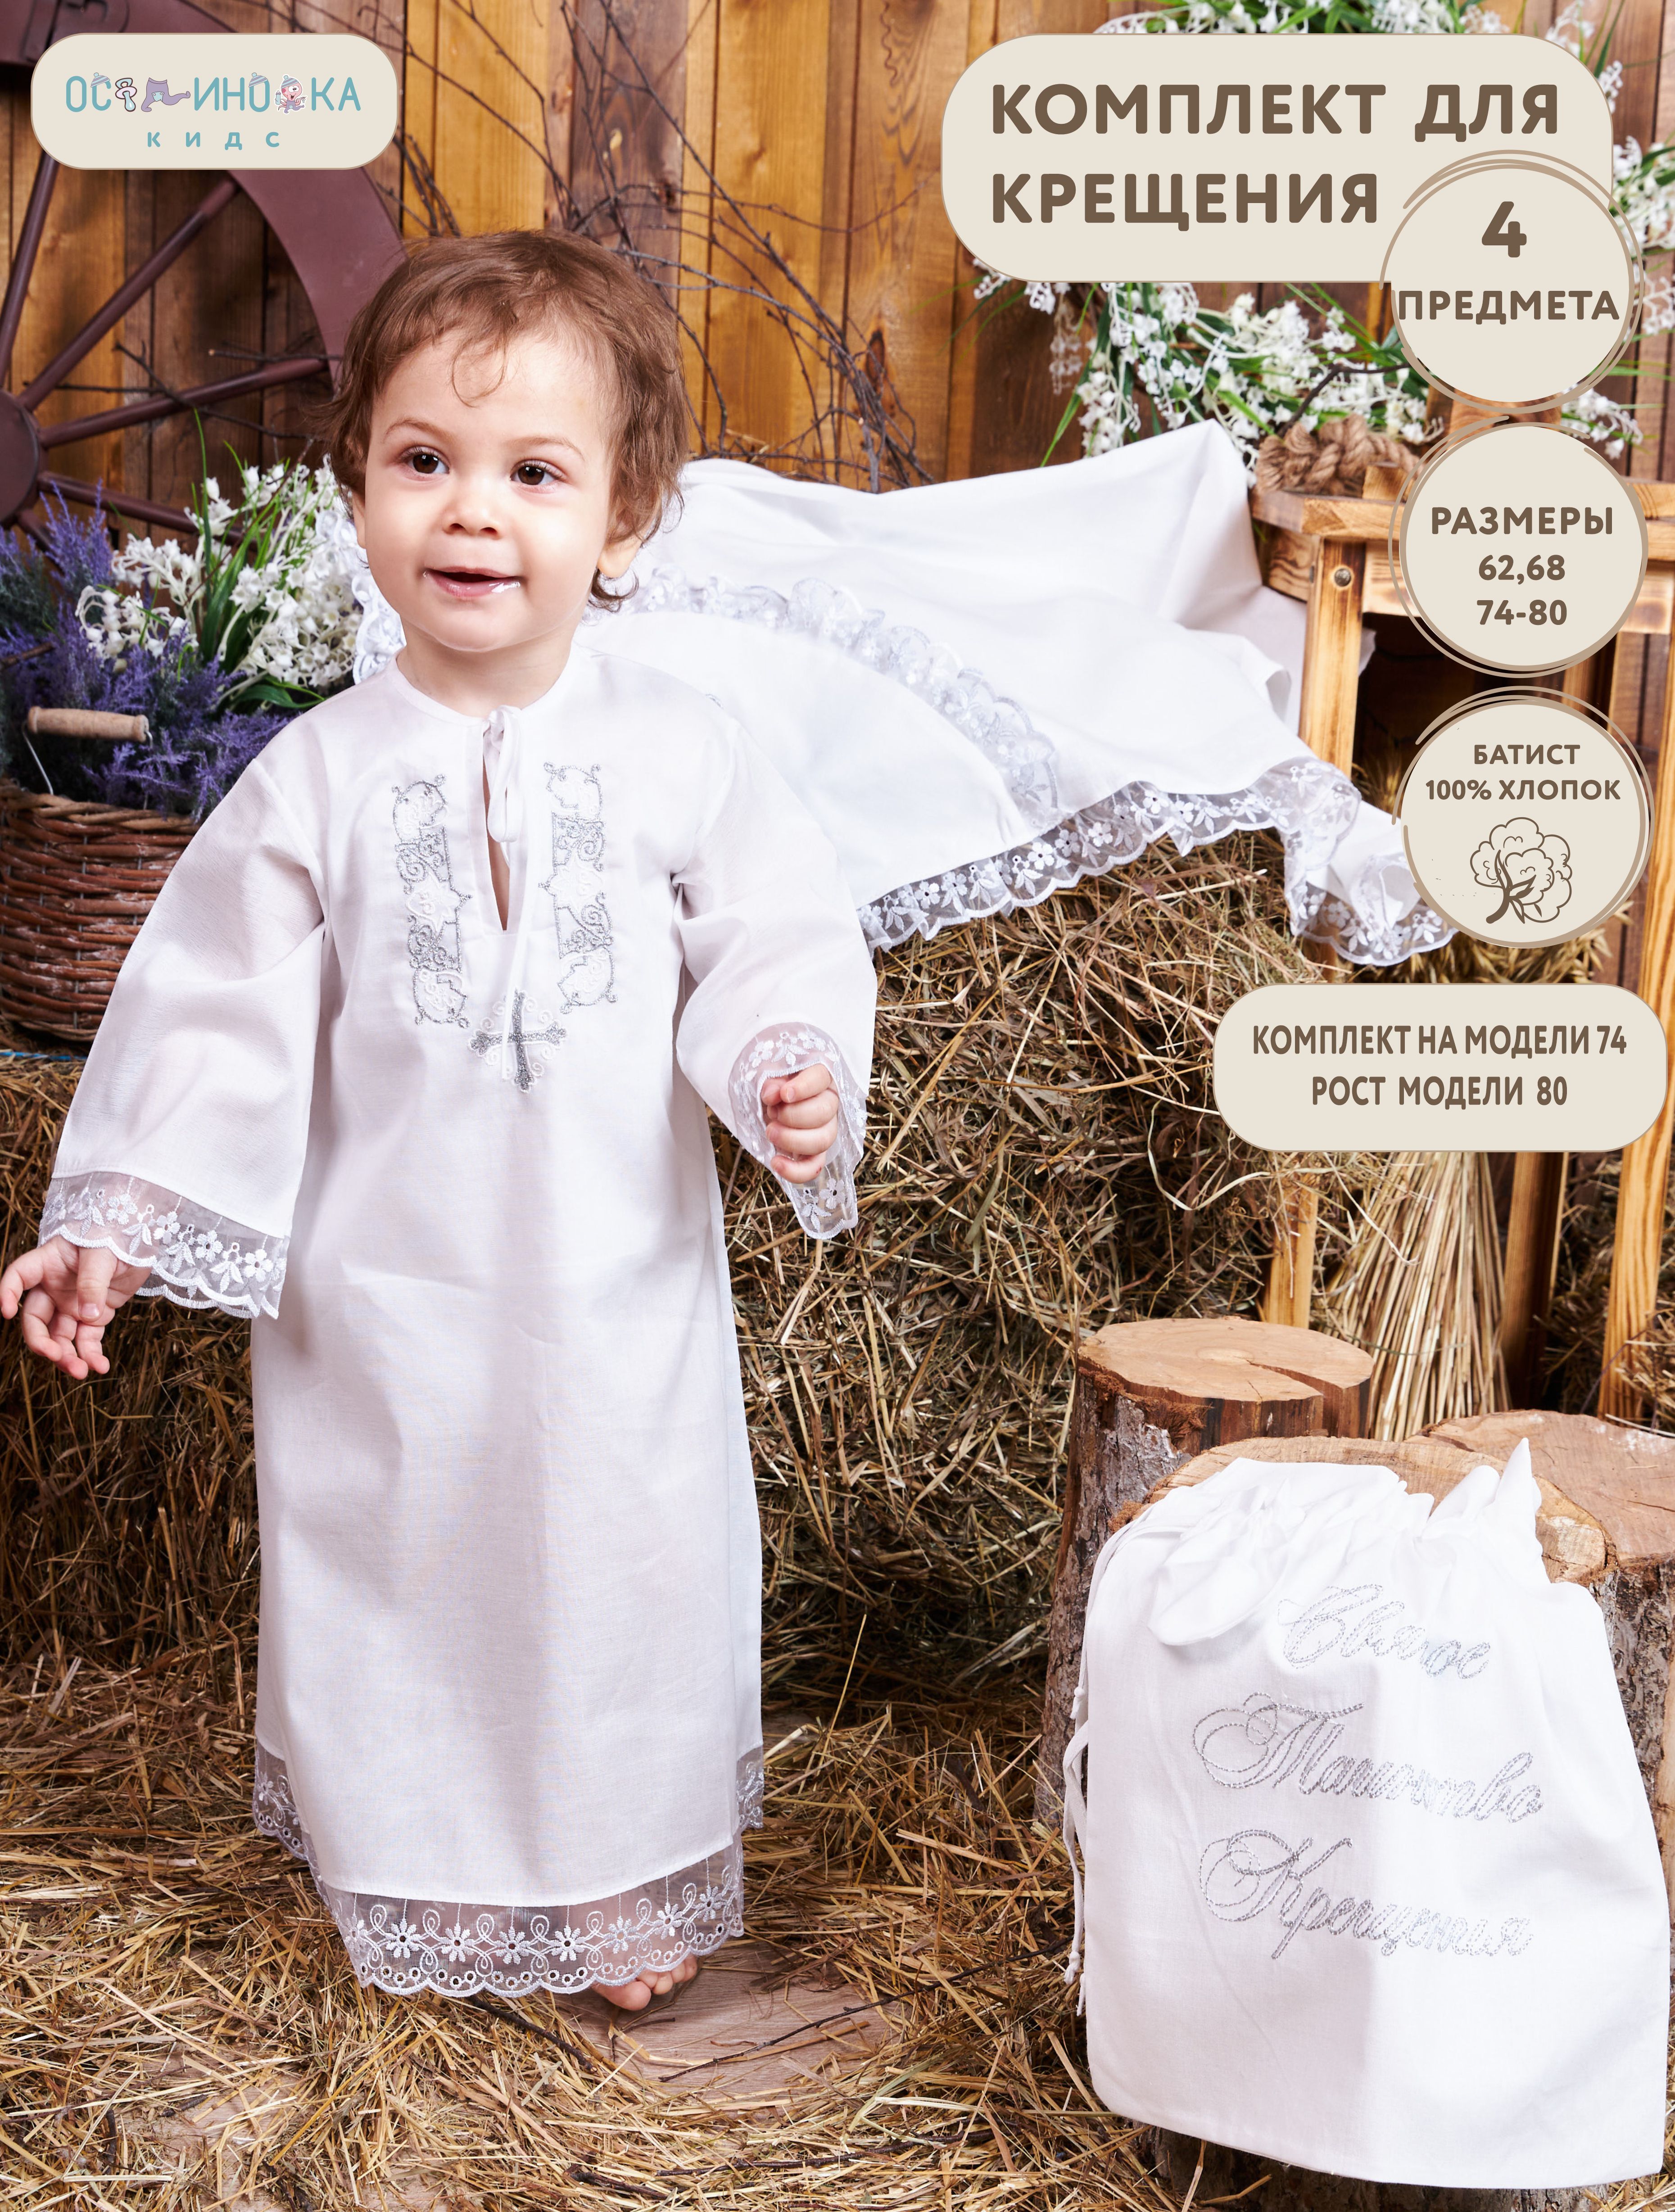 Крыжмы: пеленки и полотенца для Крещения мальчика